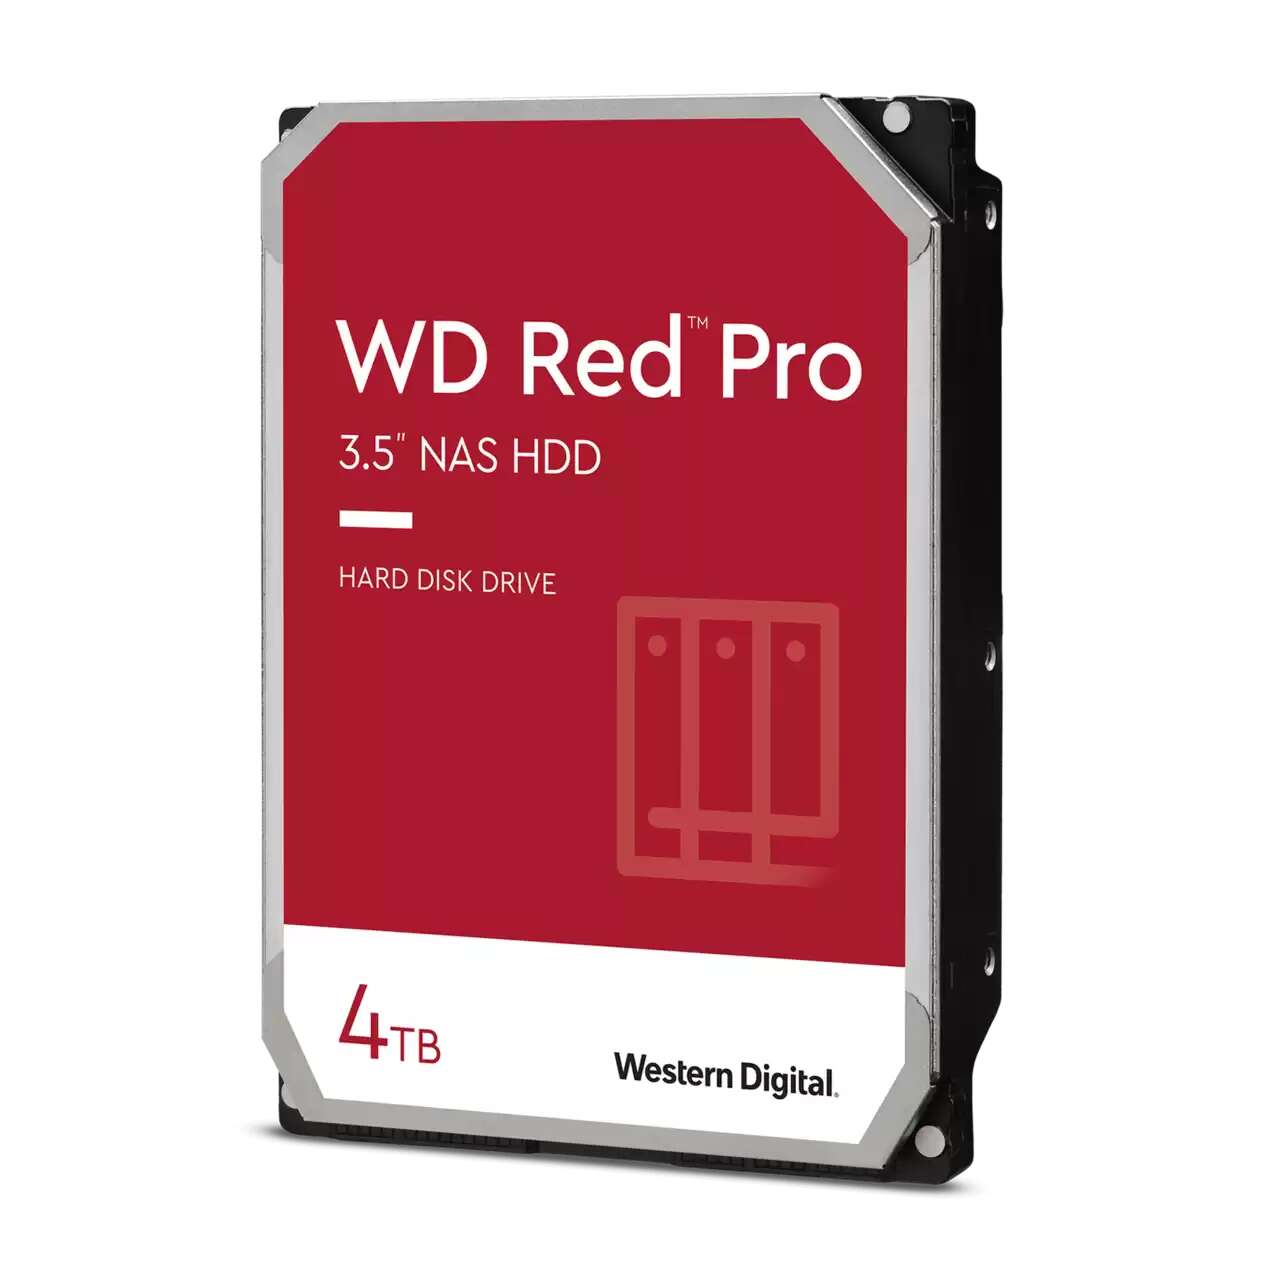 Western digital 4tb red pro sata3 3.5" nas hdd